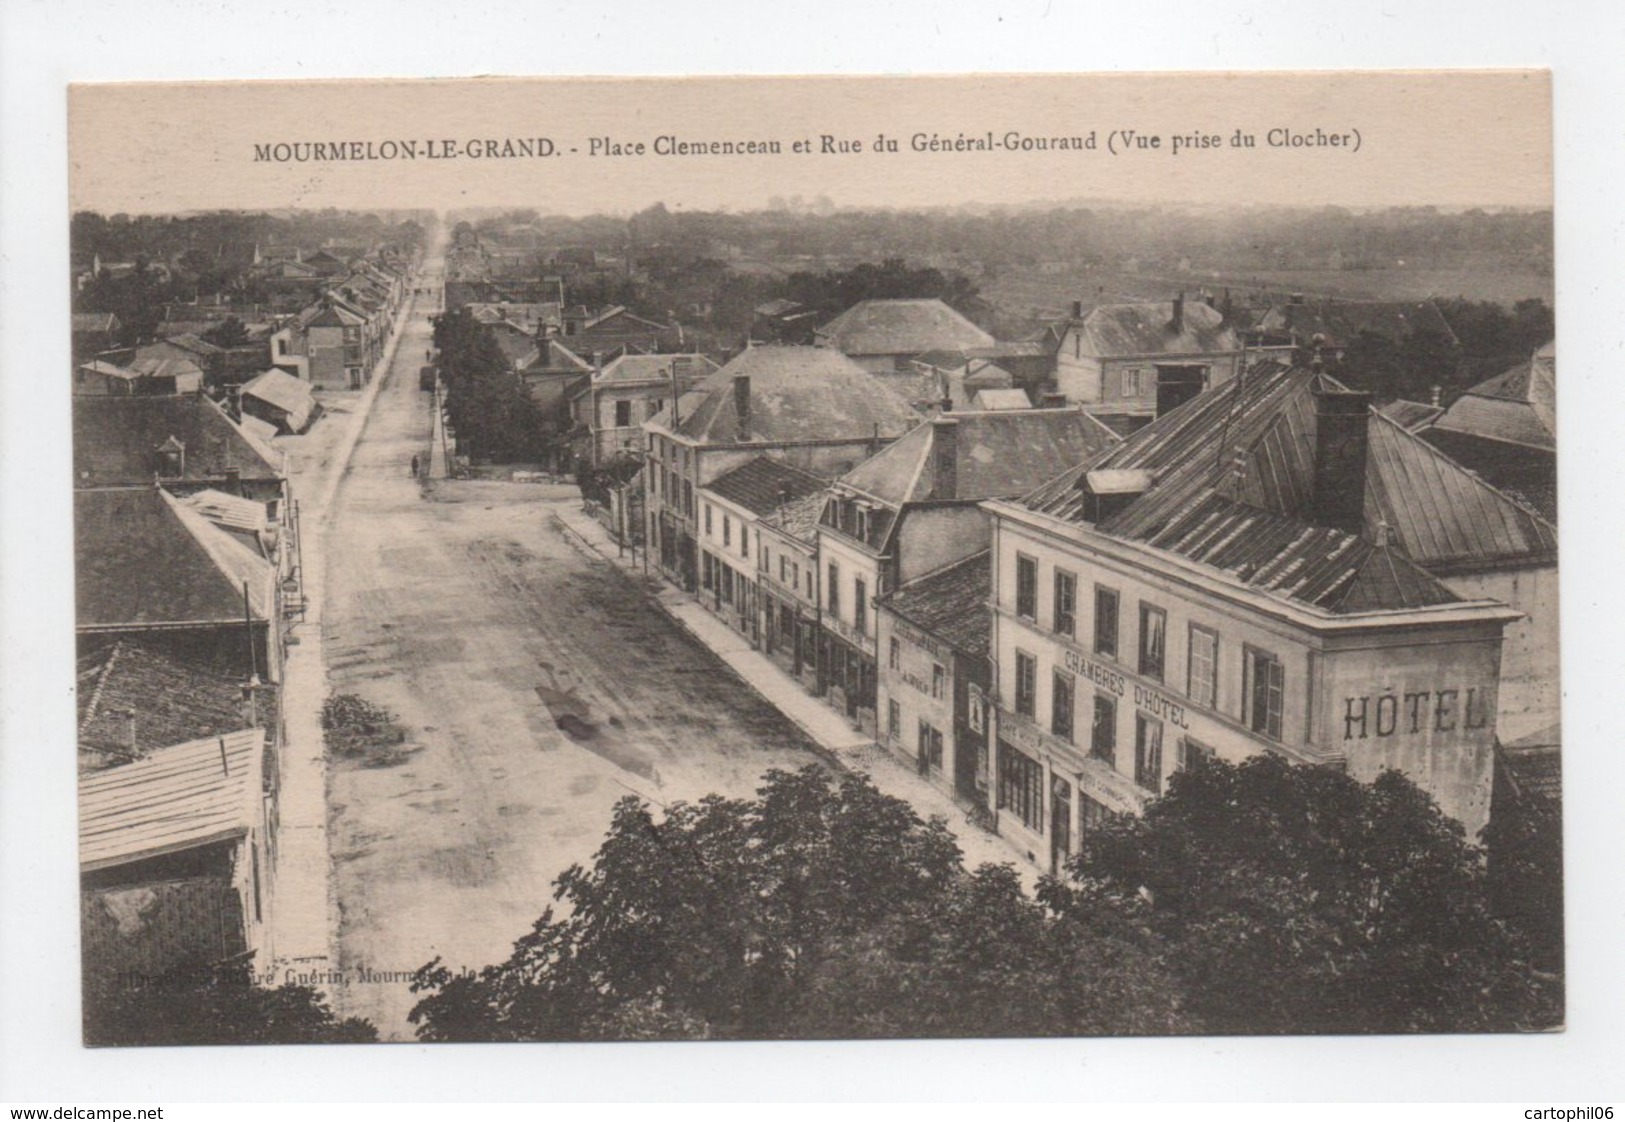 - CPA MOURMELON-LE-GRAND (51) - Place Clemenceau Et Rue Du Général-Gouraud 1922 - Edition Guérin - - Mourmelon Le Grand